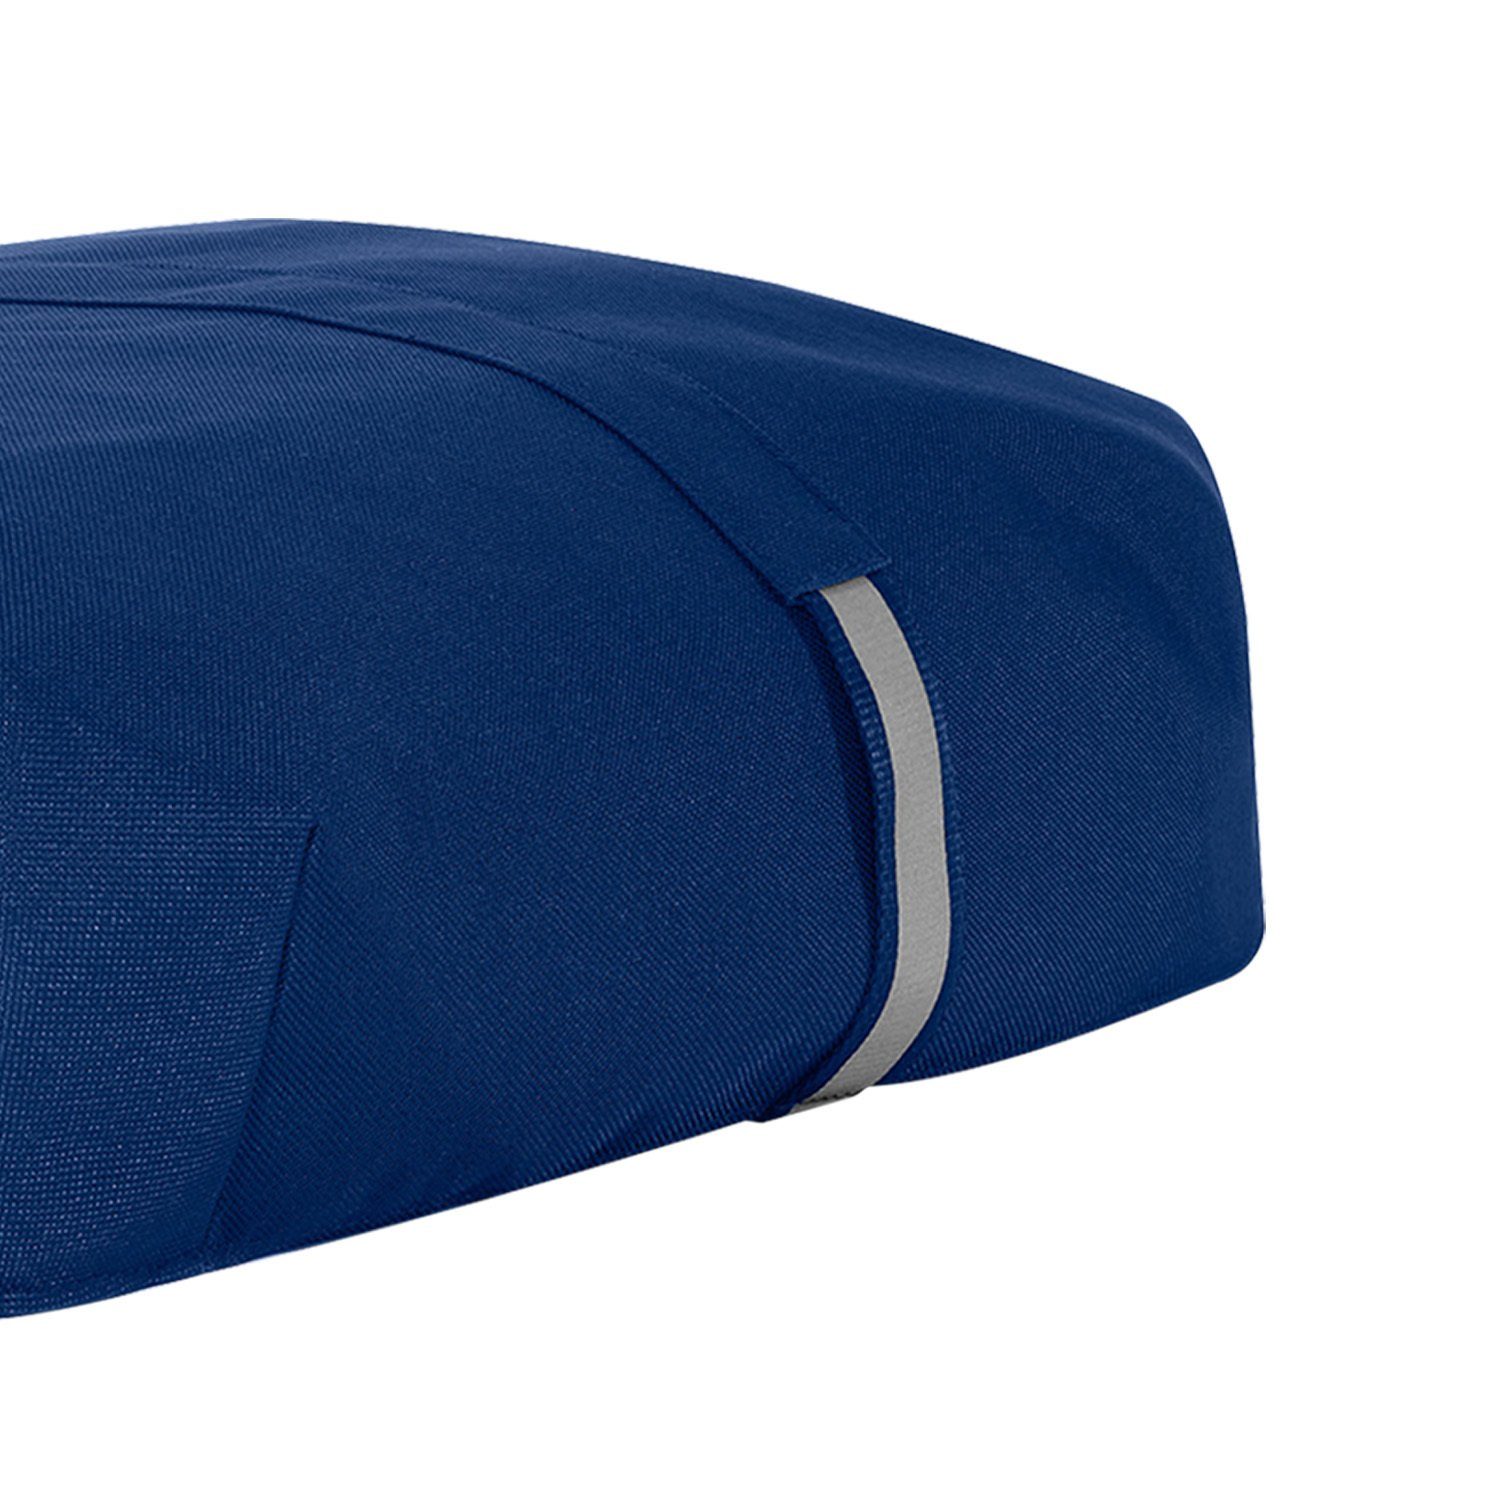 REISENTHEL® Einkaufstrolley Cover carrybag Schutzhülle Wetterschutz Auswahl - navy Abdeckung